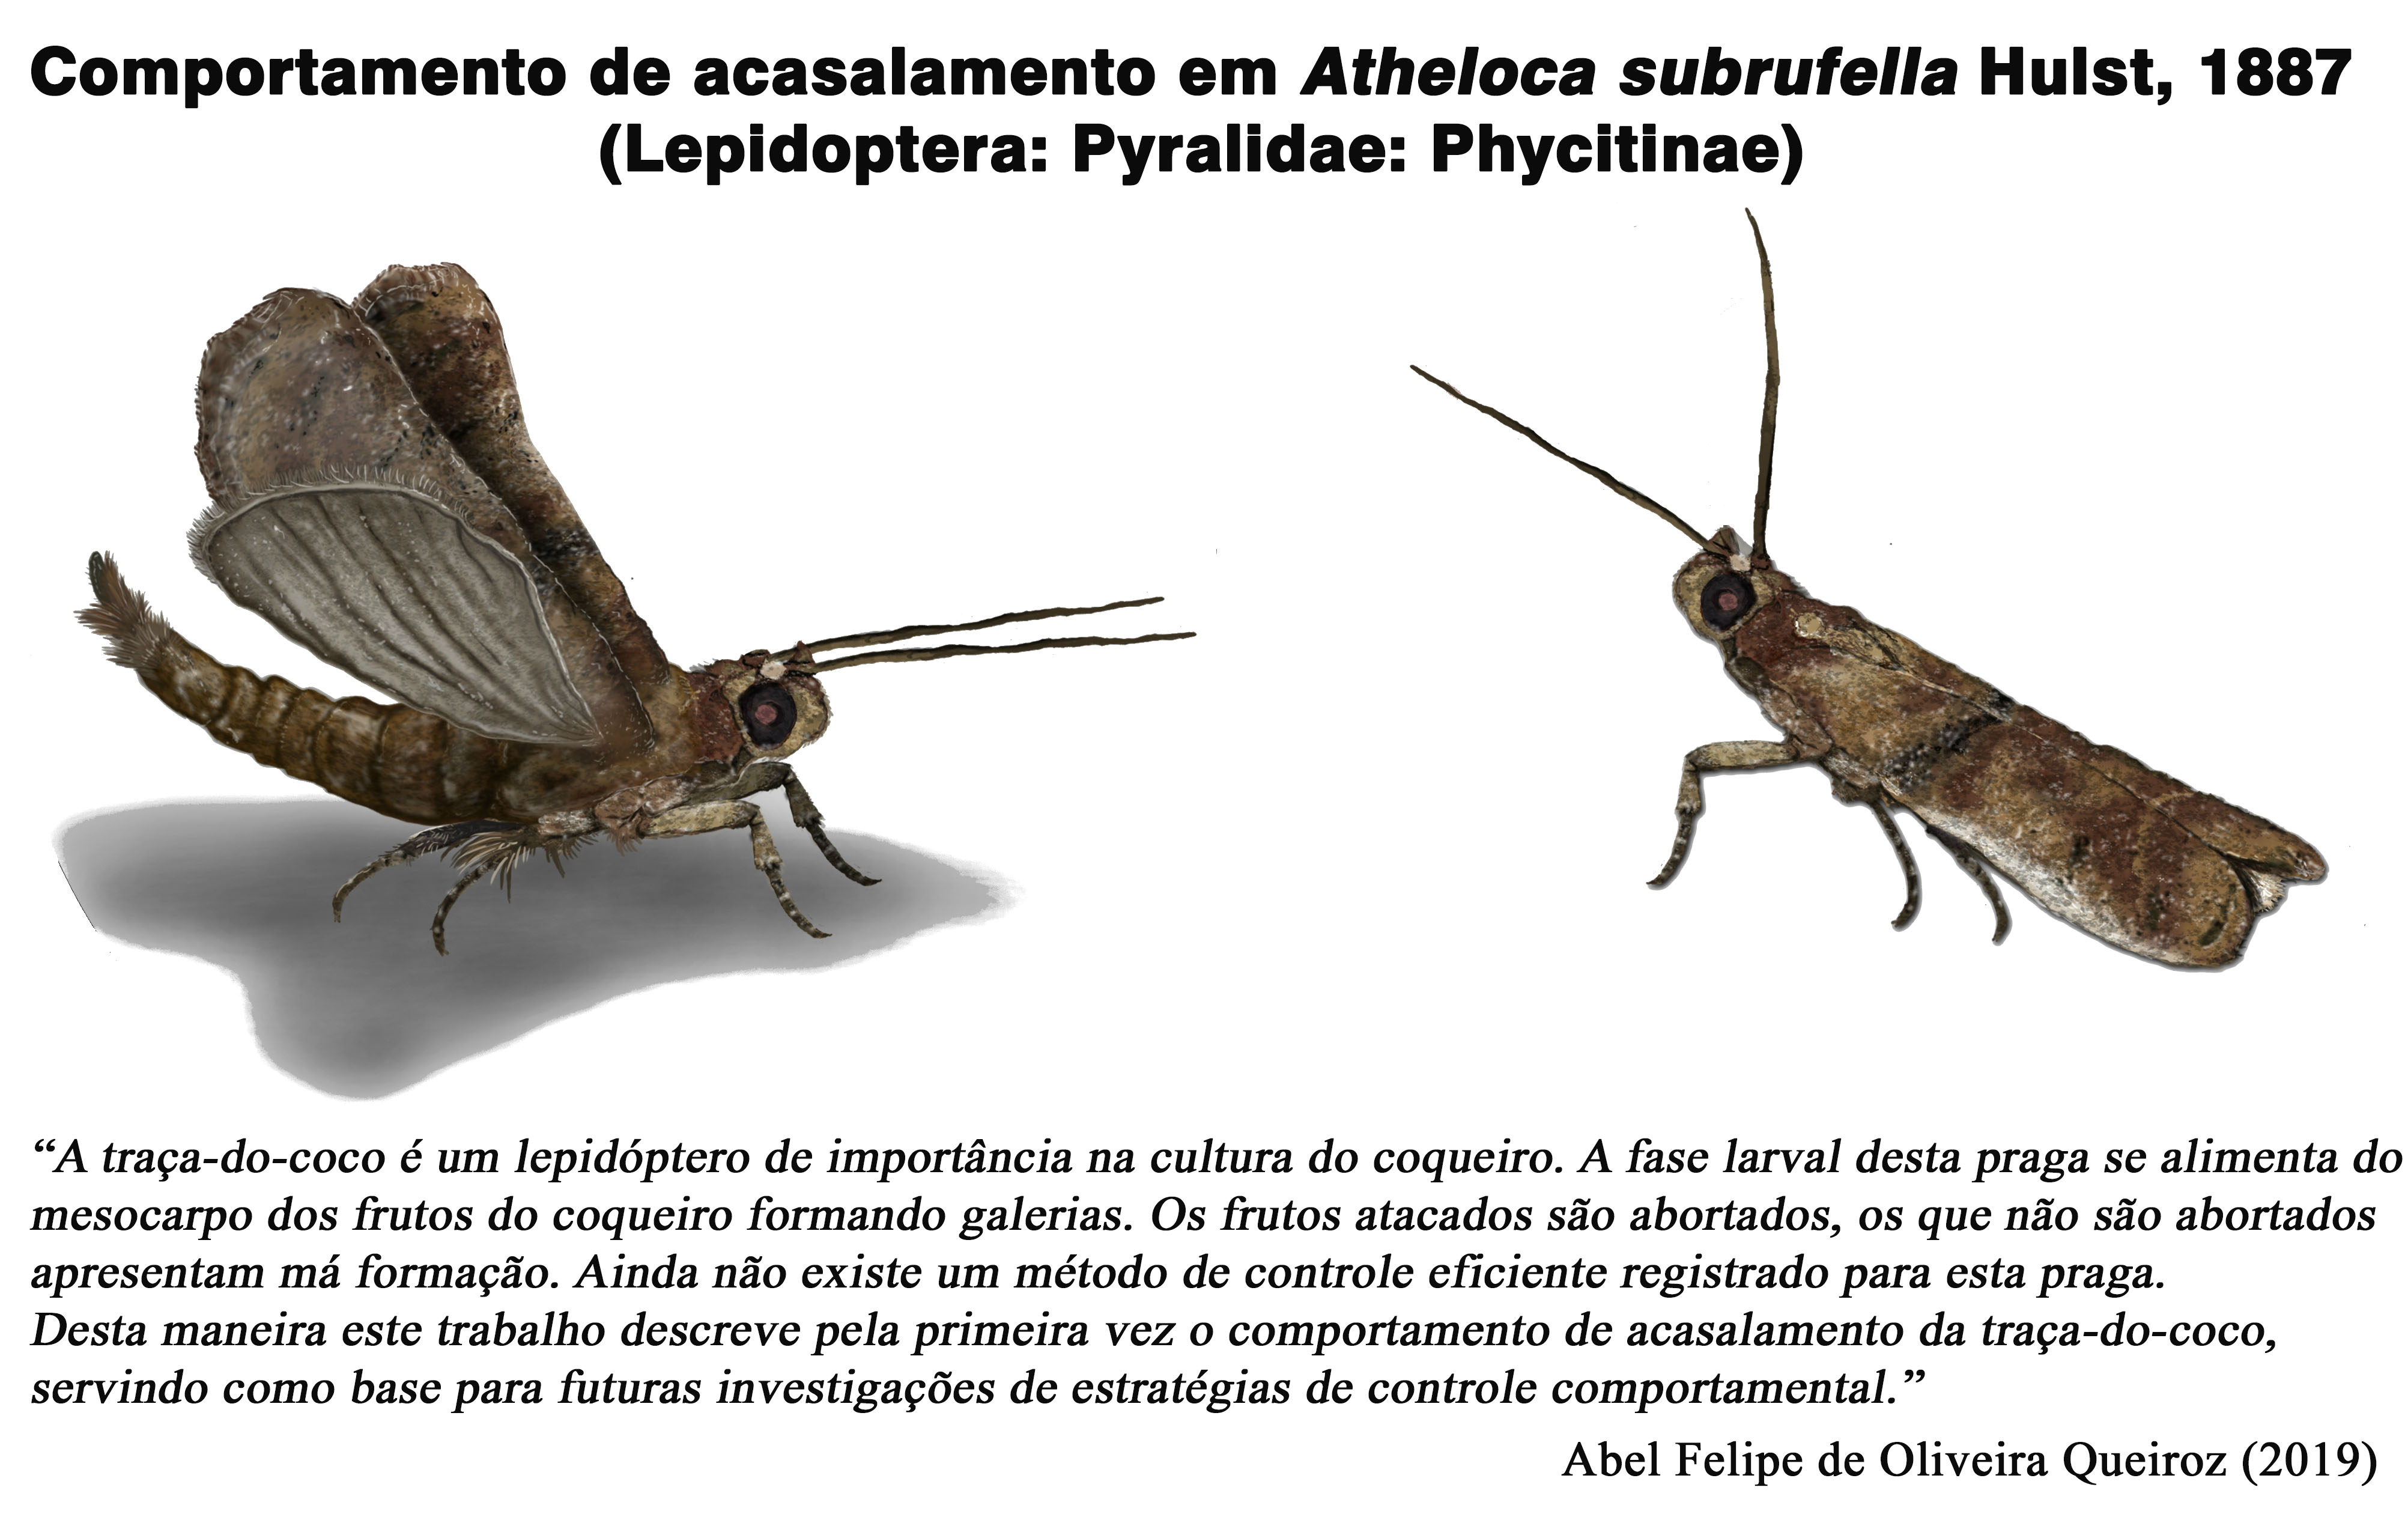 Mating behavior in Atheloca subrufella Hulst, 1887 (Lepidoptera: Pyralidae: Phycitinae)